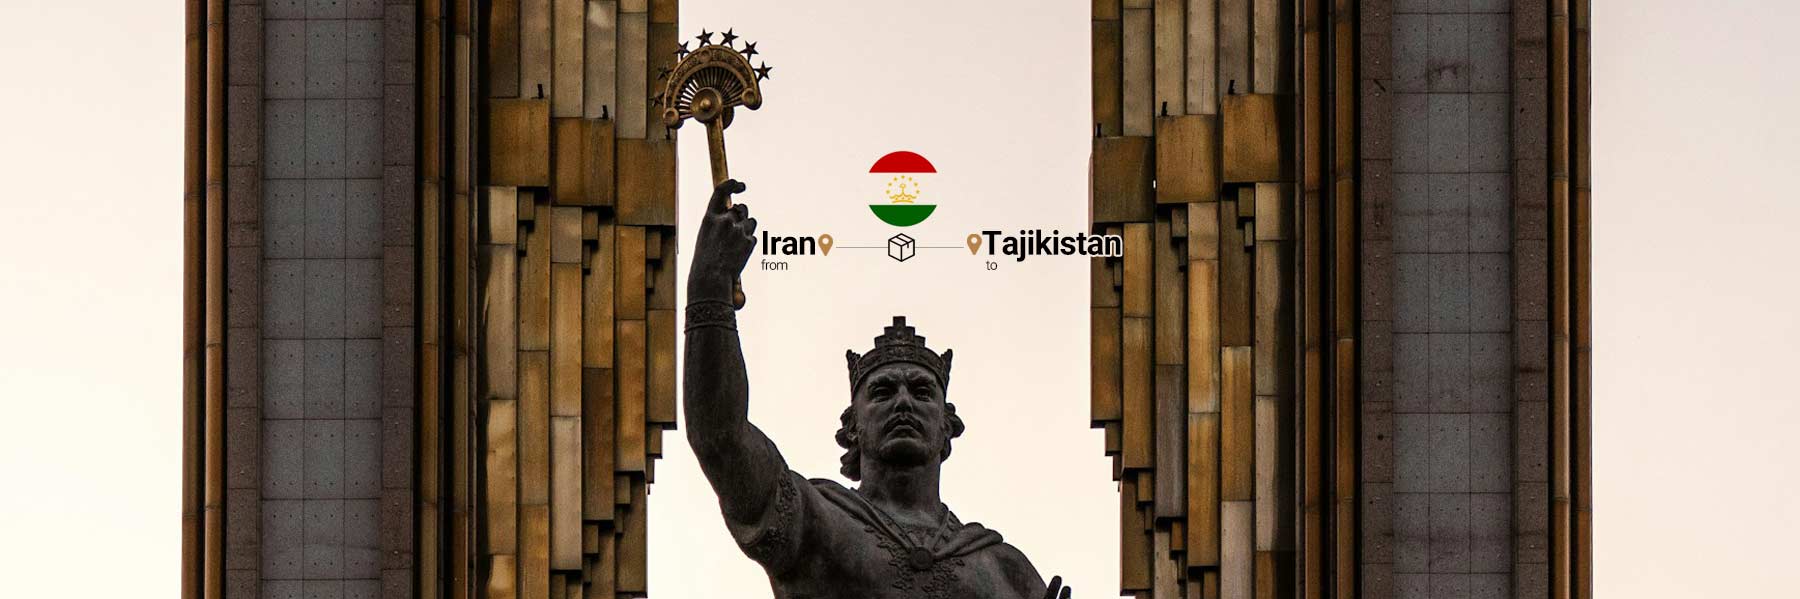 حمل بار به تاجیکستان